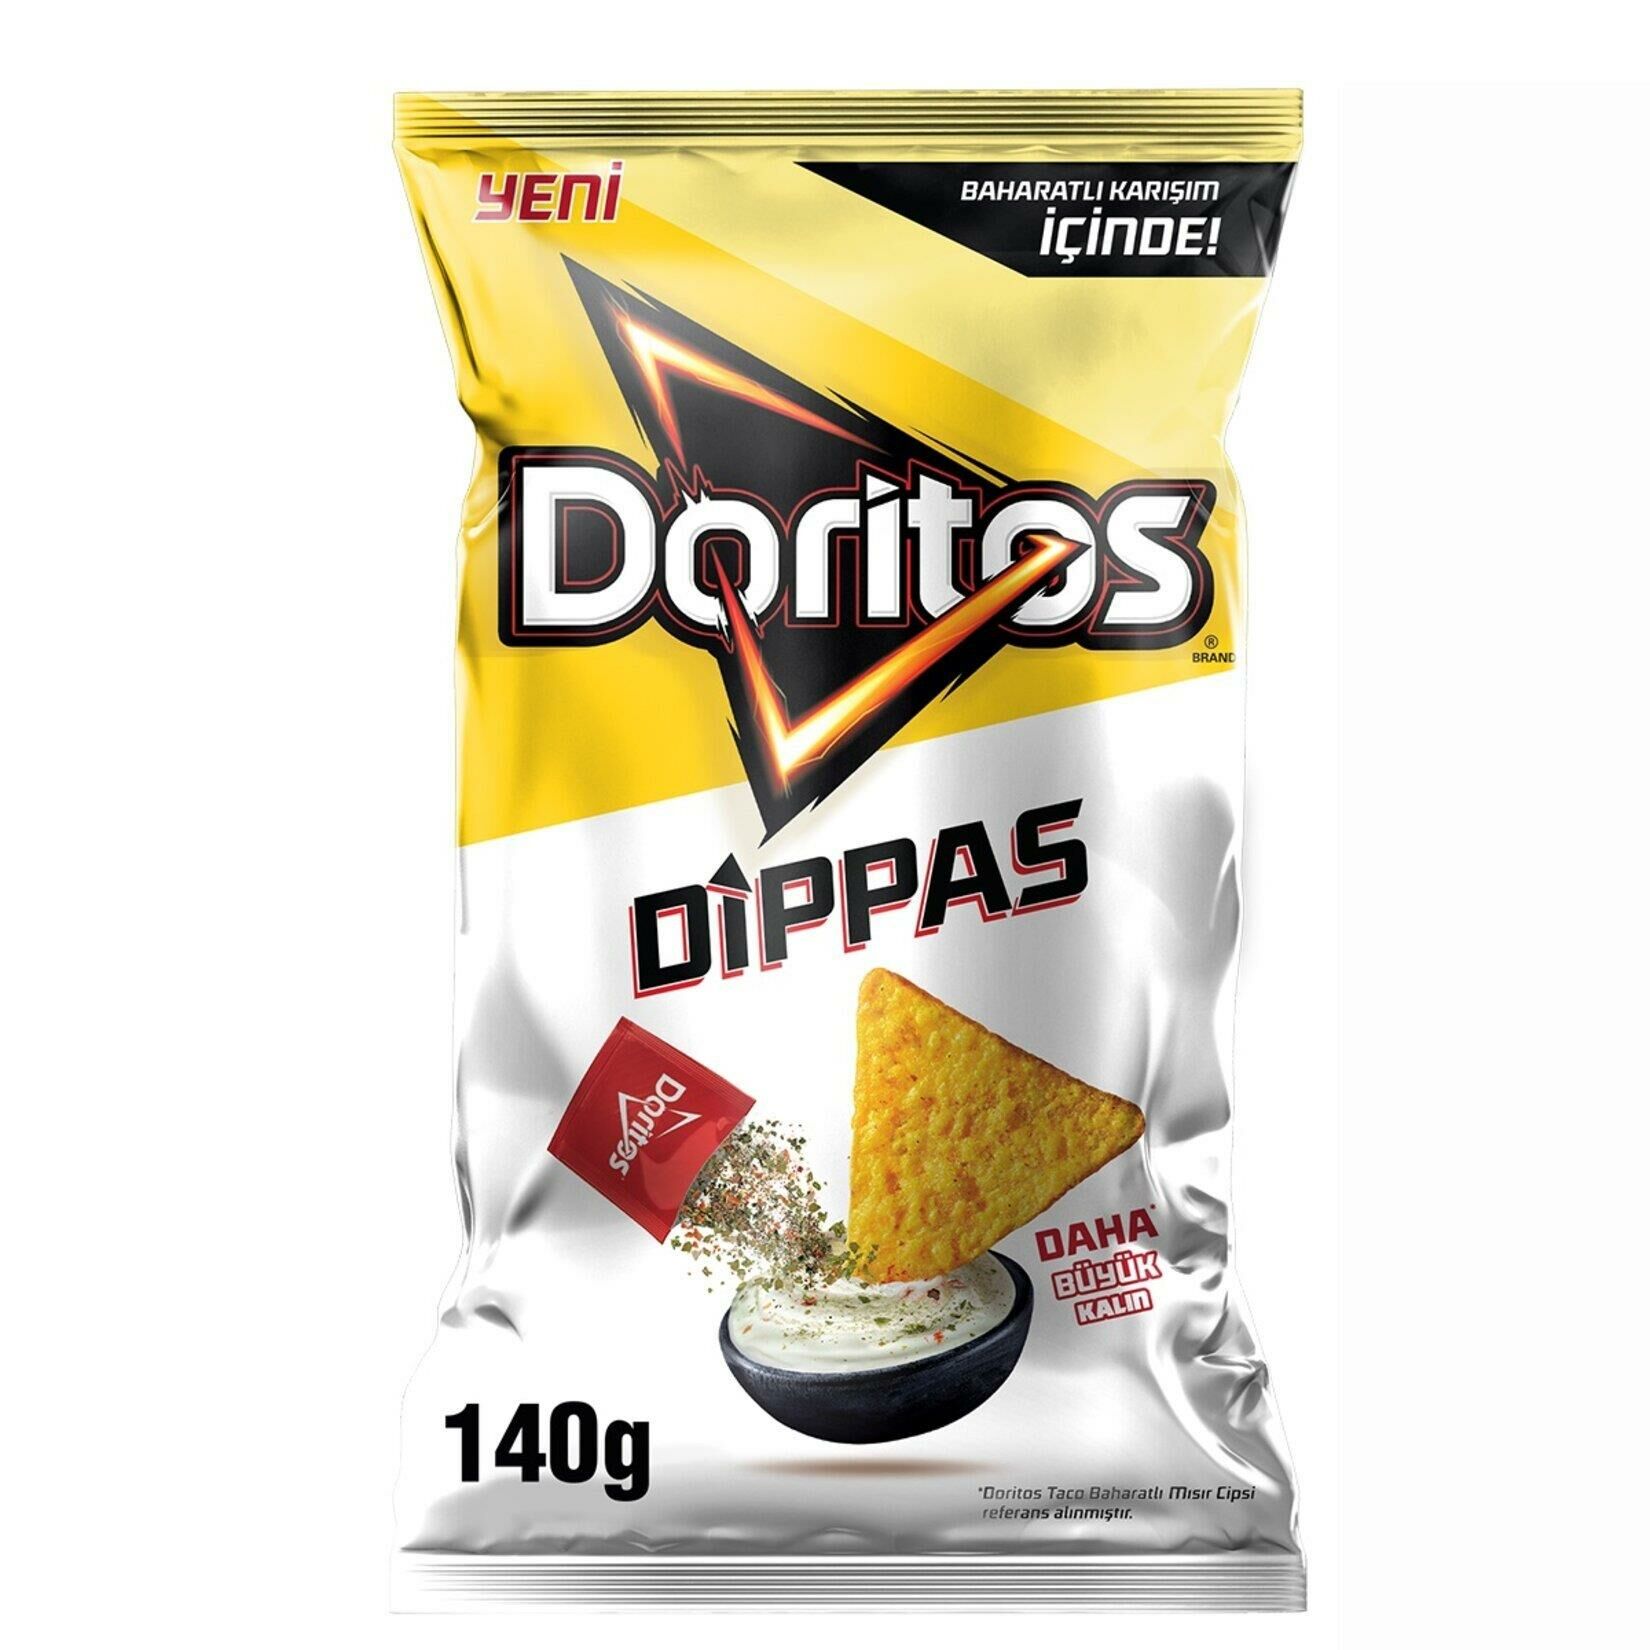 Fritolay Doritos Dippas 140 Gr